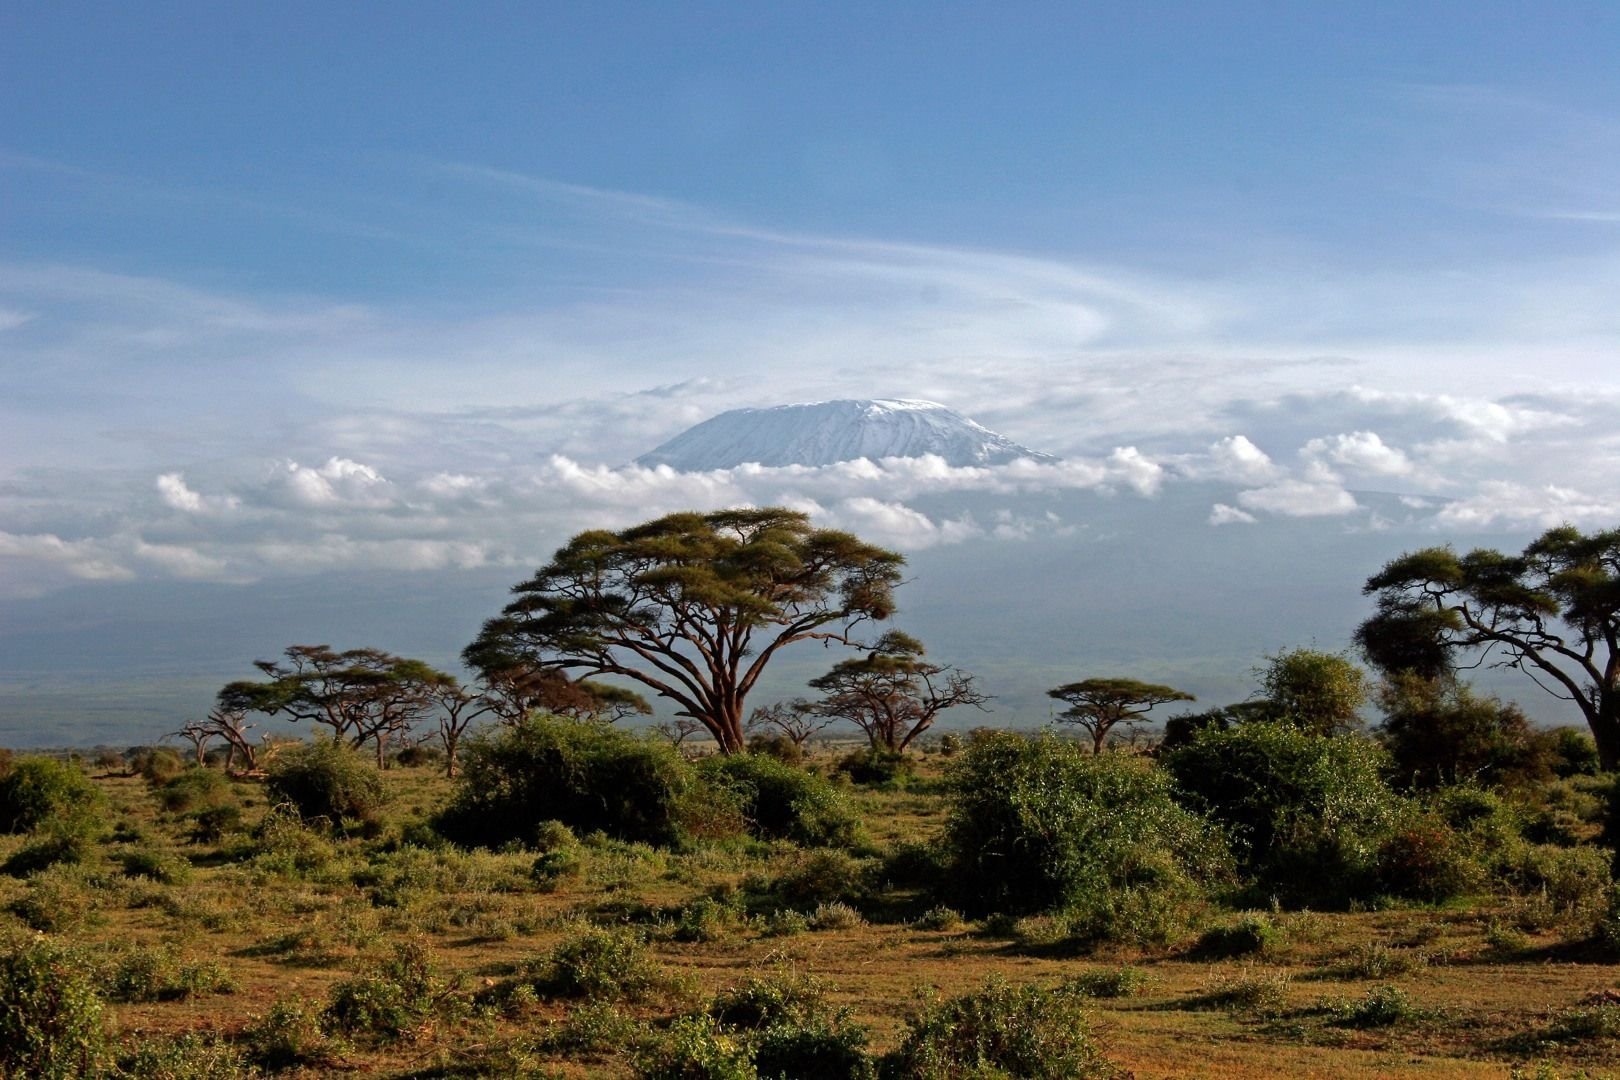 Саванной восточной африки. Национальный парк Амбосели Кения. Национальный парк Килиманджаро в Африке. Национальный парк Килиманджаро в Танзании. Саванна Килиманджаро.